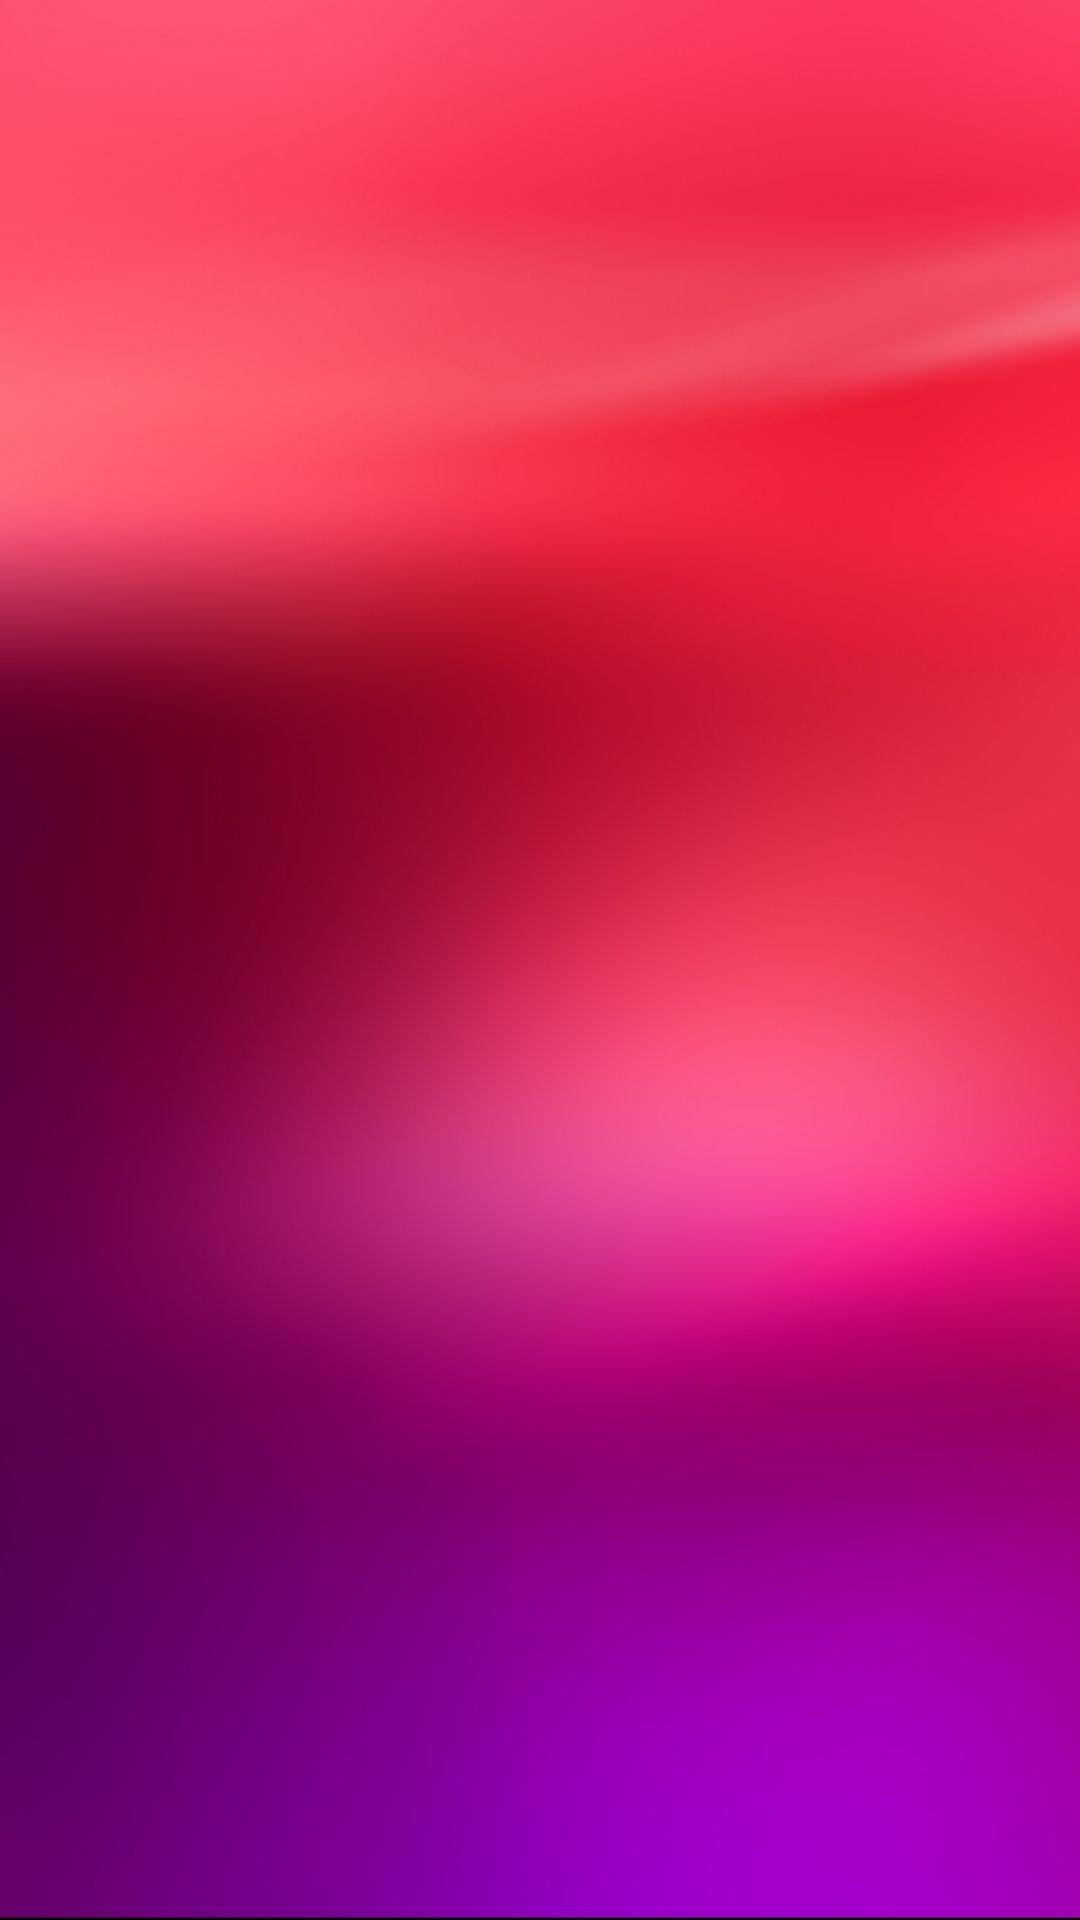 1080x1920 Hình Nền iPhone.  Hồng, Đỏ, Tím, Đỏ tươi, Tím, Tử đinh hương